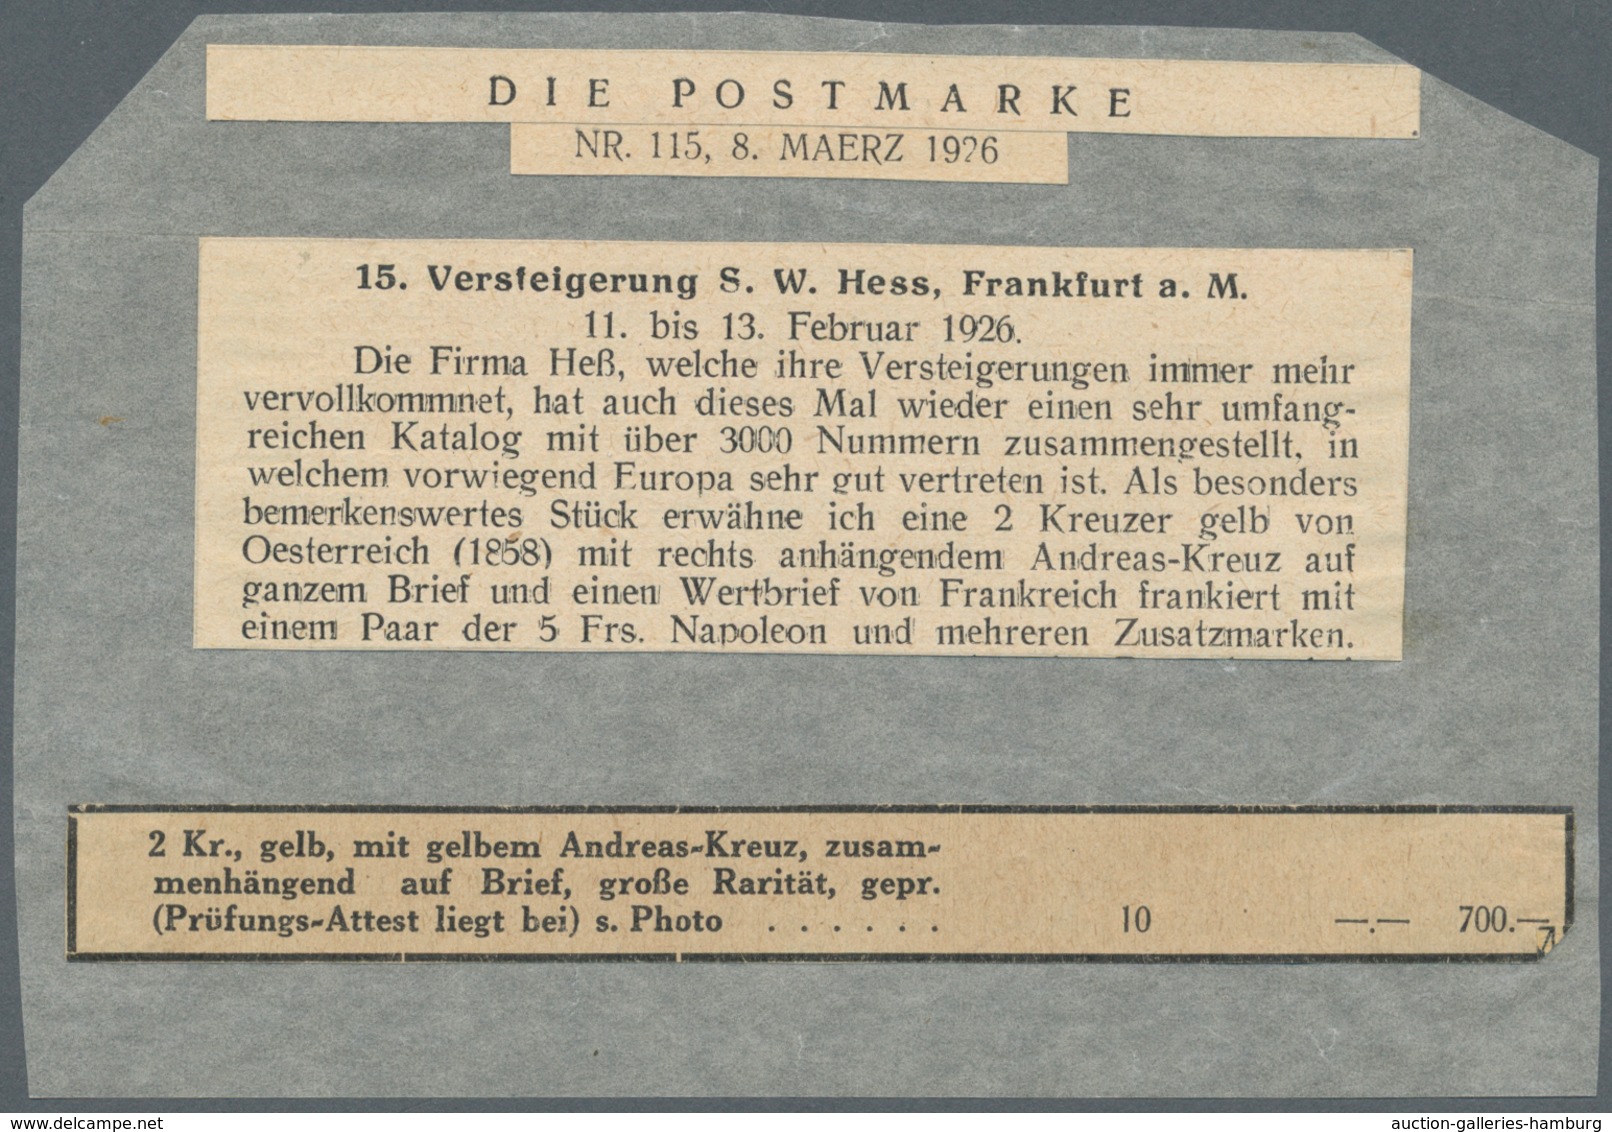 Österreich: 1858/59: 2 Kreuzer Gelb, Type II, Mit Kleinem Gelben Andreas-Kreuz Auf Kompletter Drucks - Unused Stamps